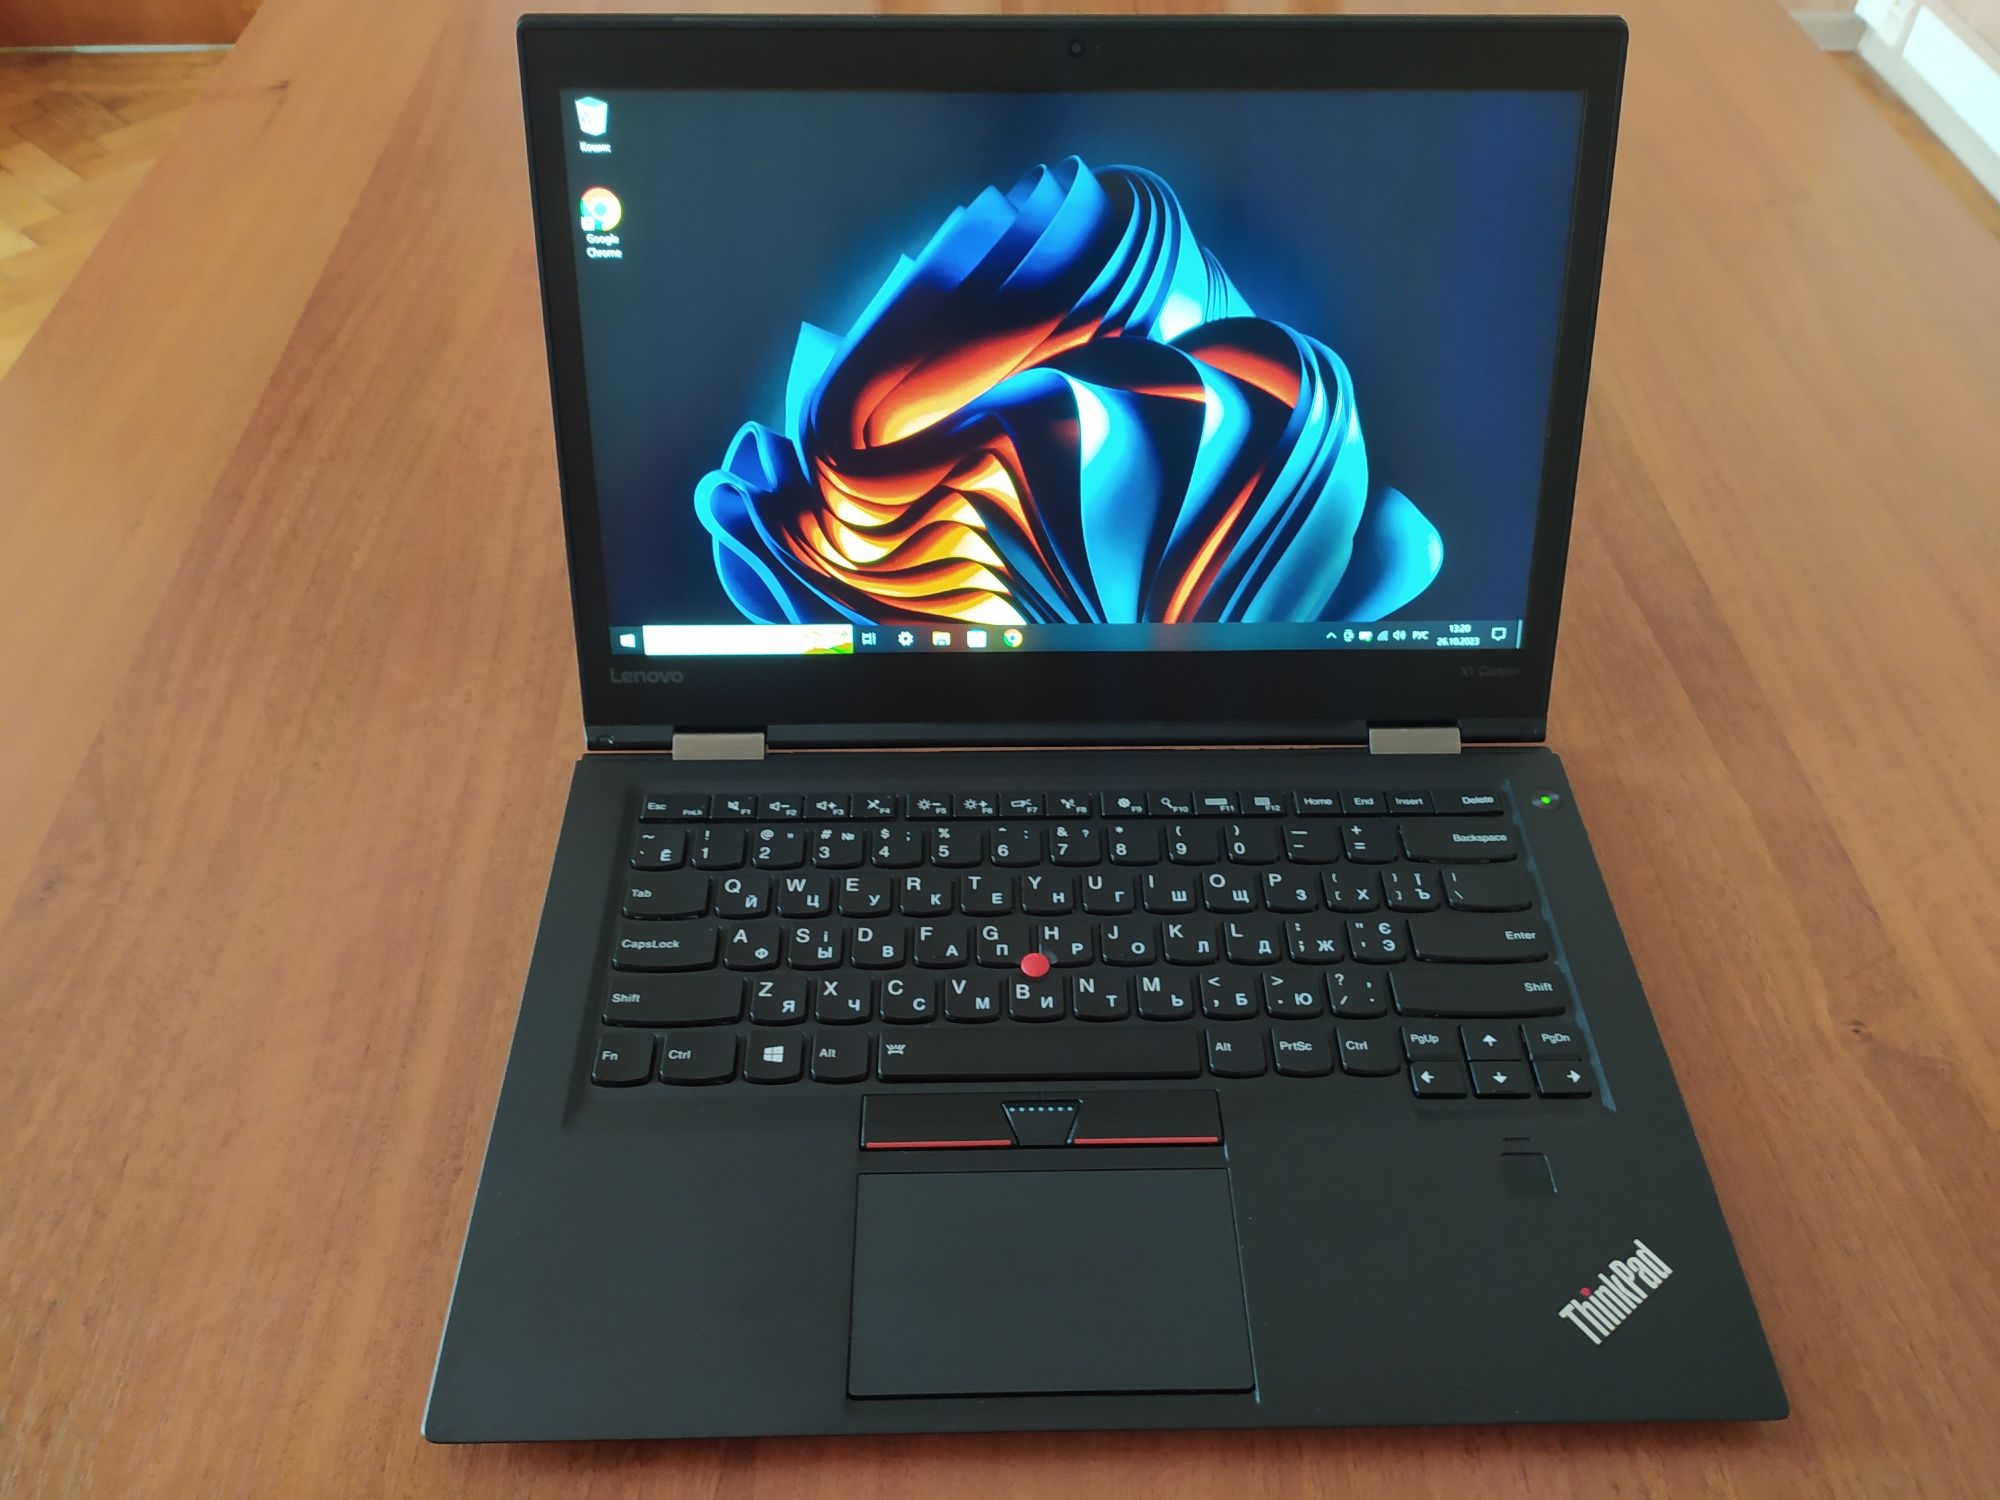 ThinkPad X1 Carbon Gen 4, I5-6200u, 8Gb RAM, 180Gb SSD